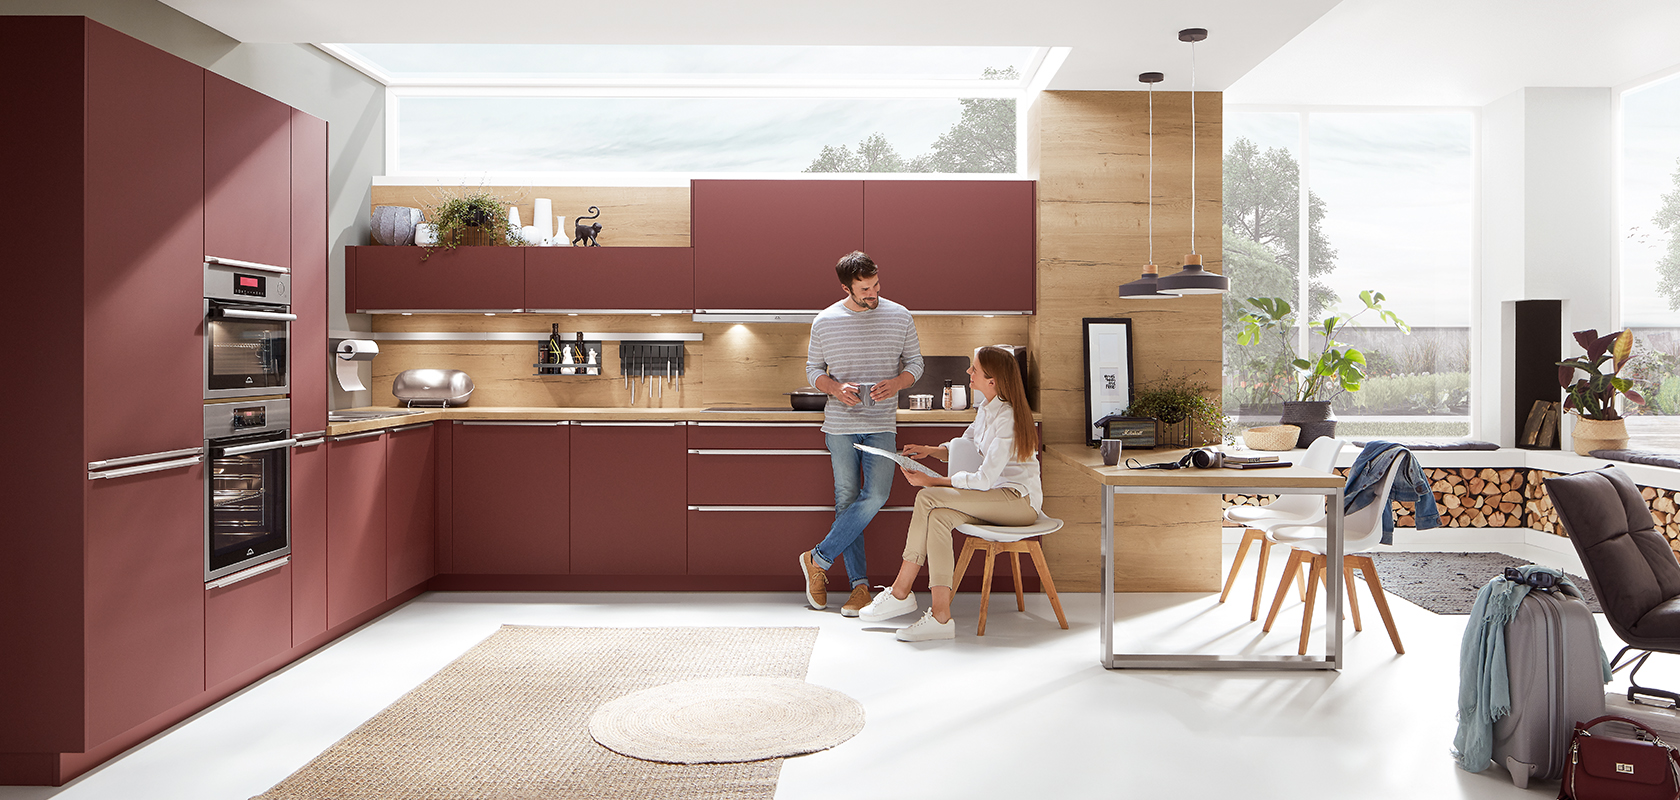 Moderní kuchyň s elegantními kaštanovými skříňkami, nerezovými spotřebiči a dřevěnými doplňky, na kterých jsou pár v pohodlném oblečení vedoucí příjemný rozhovor.